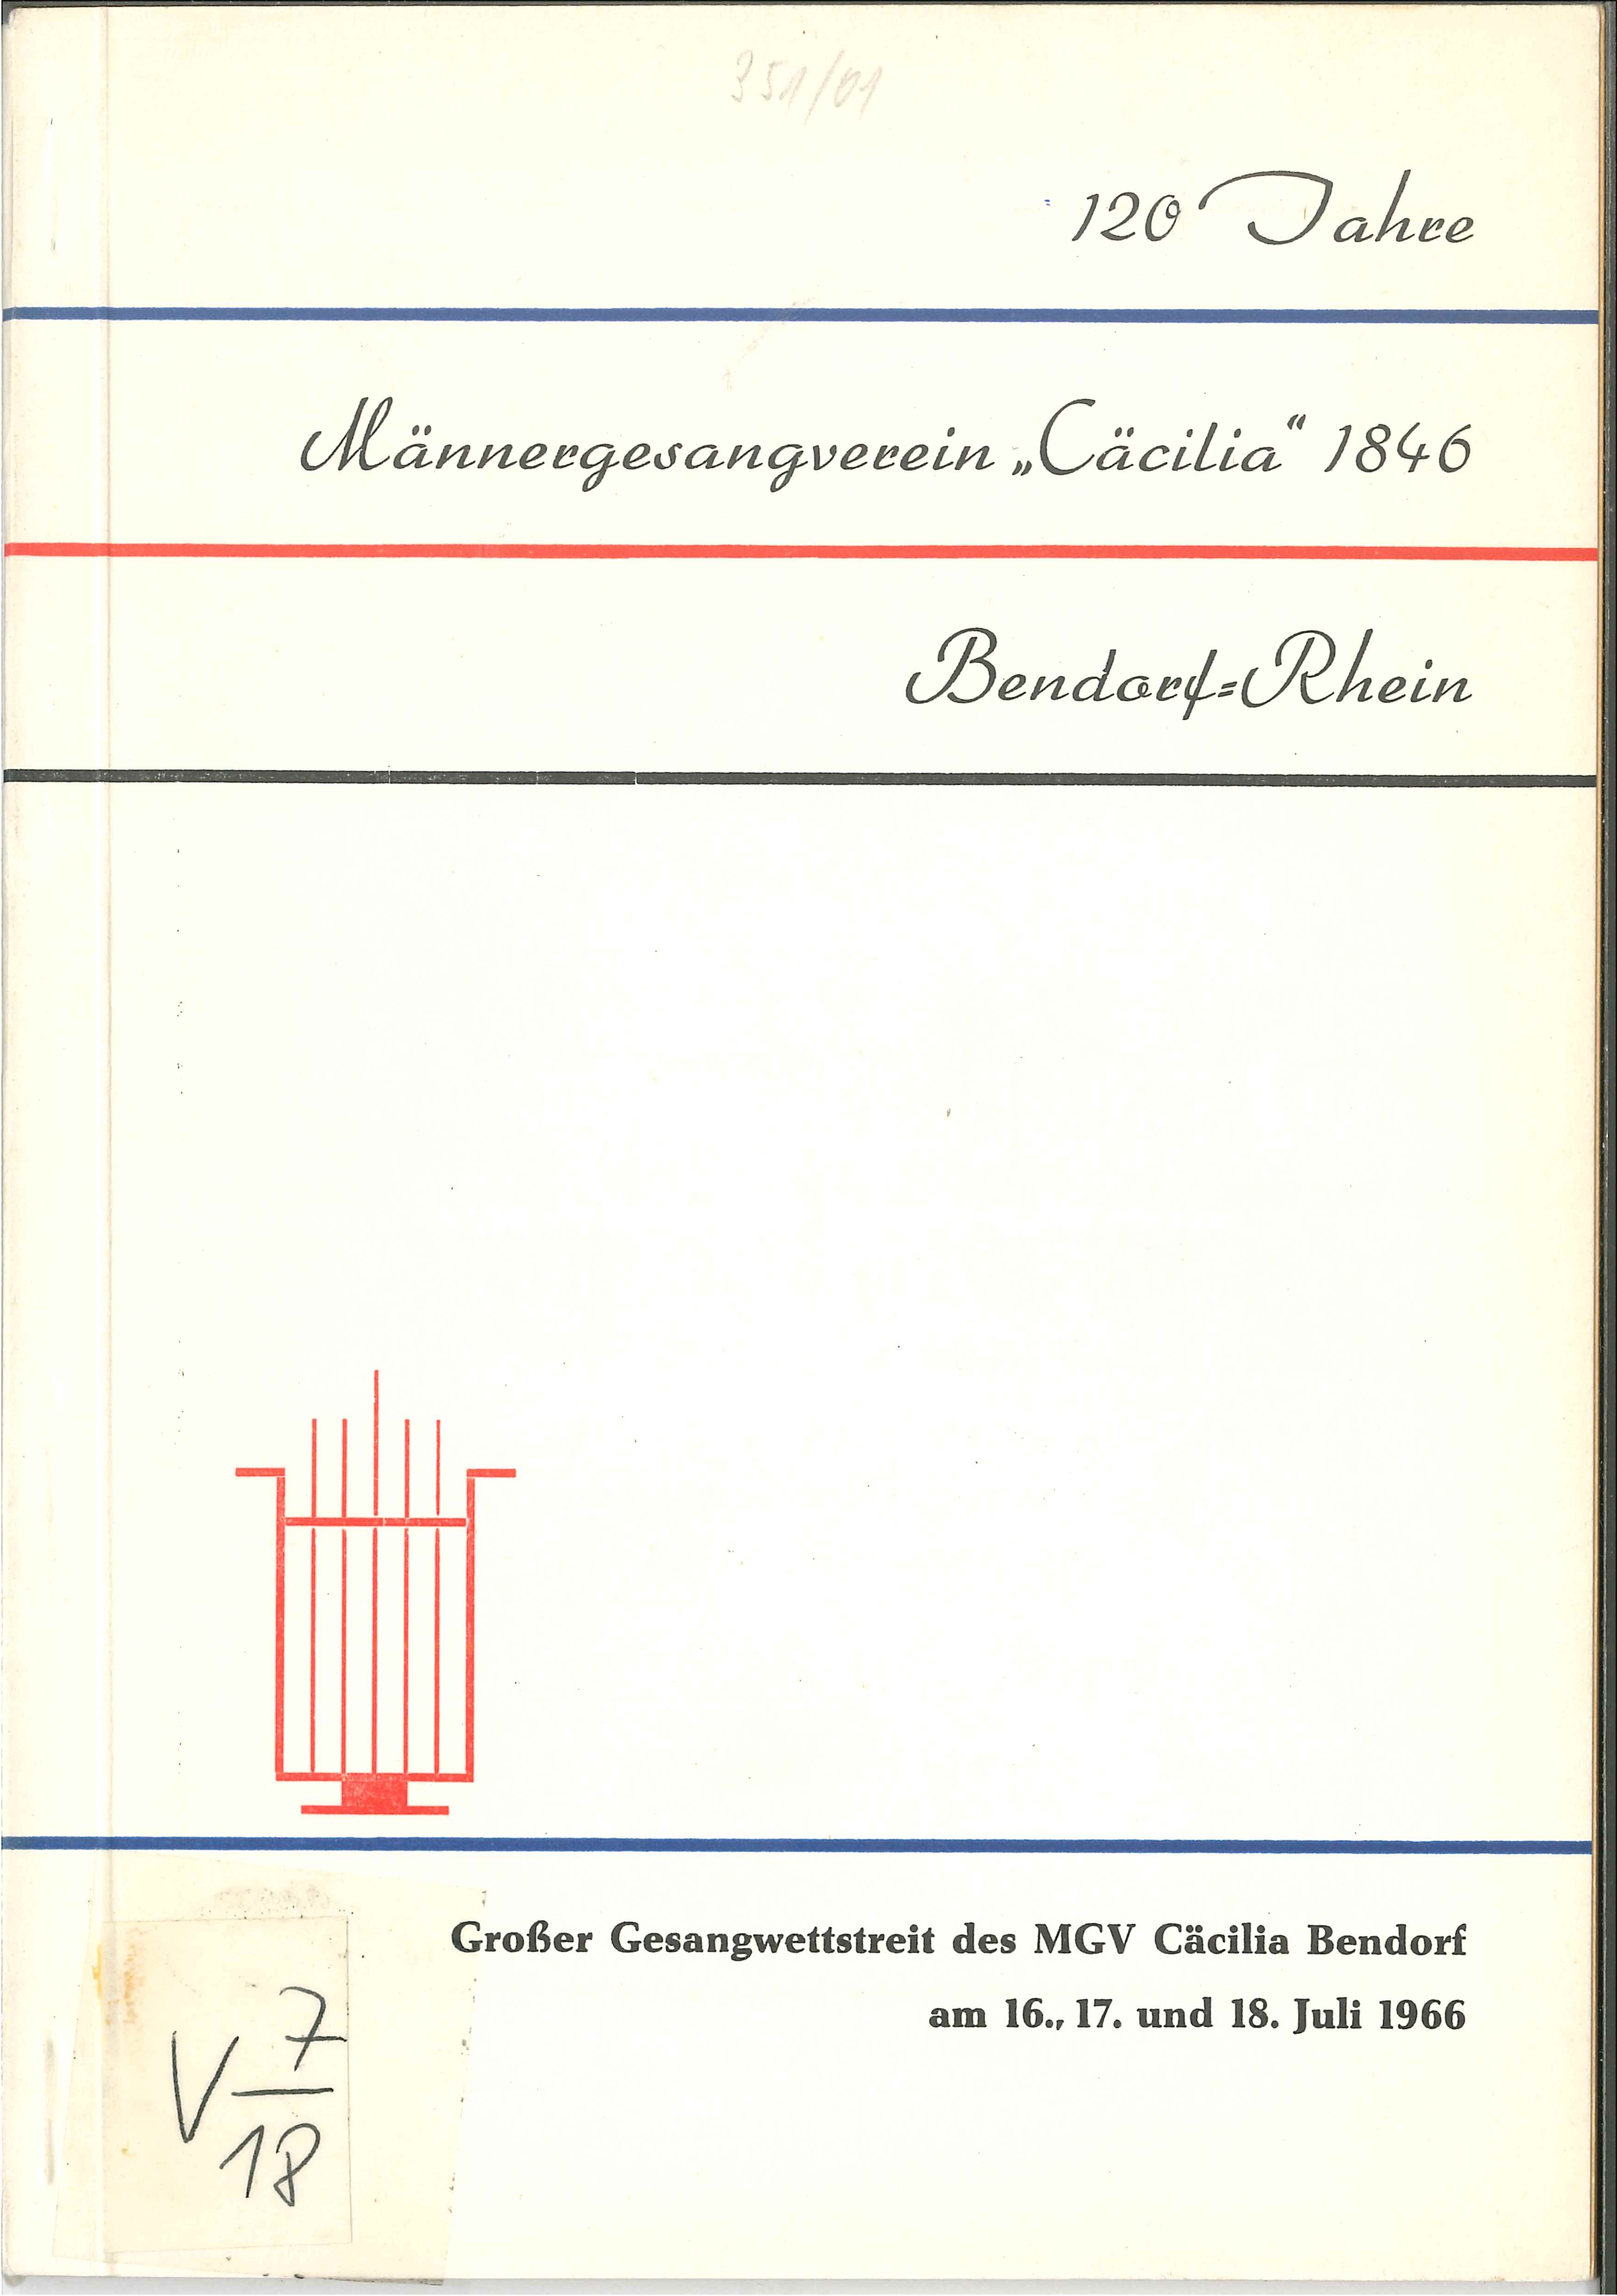 Festschrift Männergesangverein "Cäcilia" 1846 Bendorf, 1966 (Rheinisches Eisenkunstguss-Museum CC BY-NC-SA)